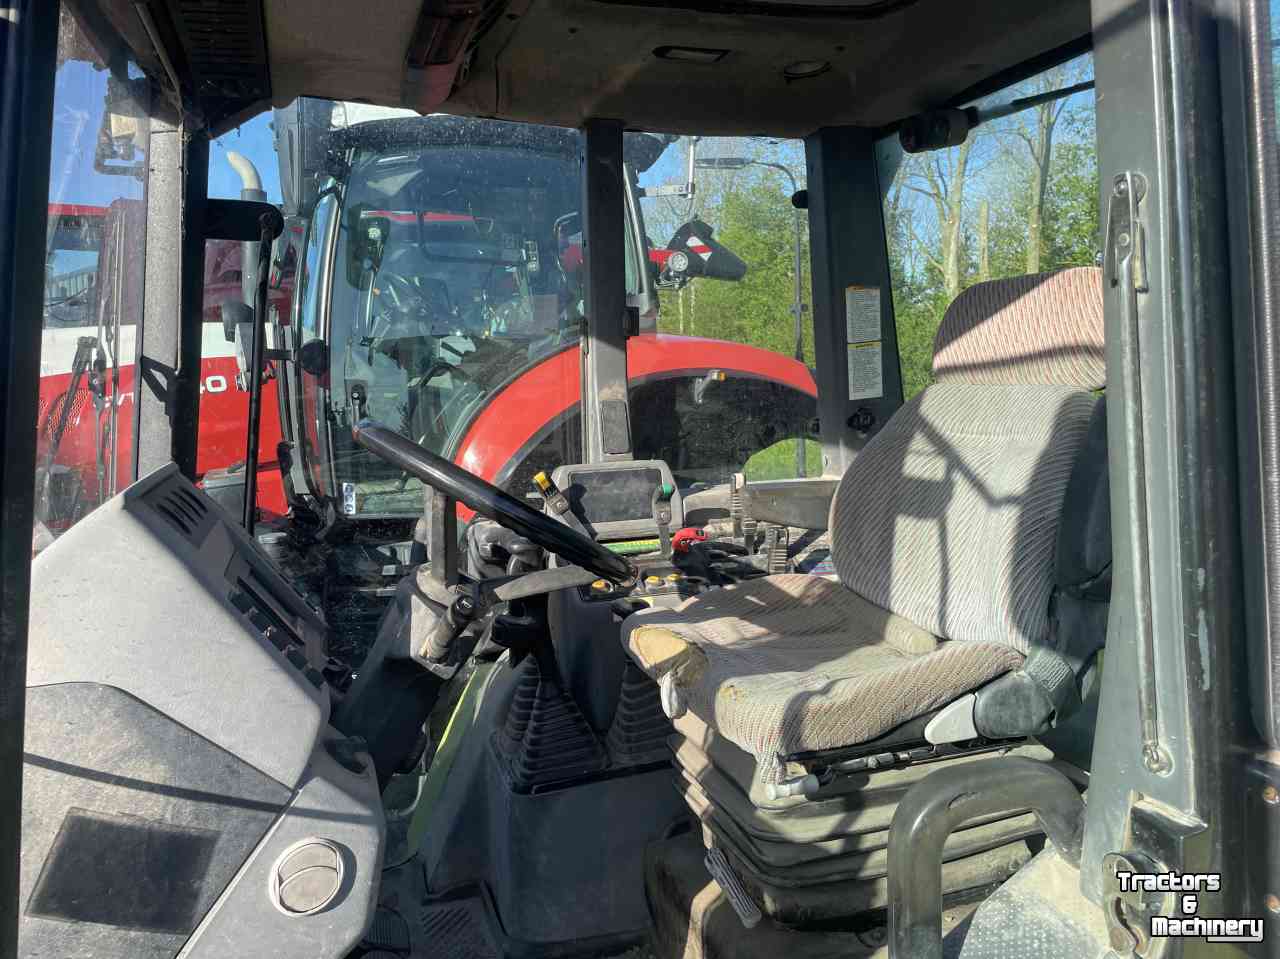 Schlepper / Traktoren Hurlimann Xl 909